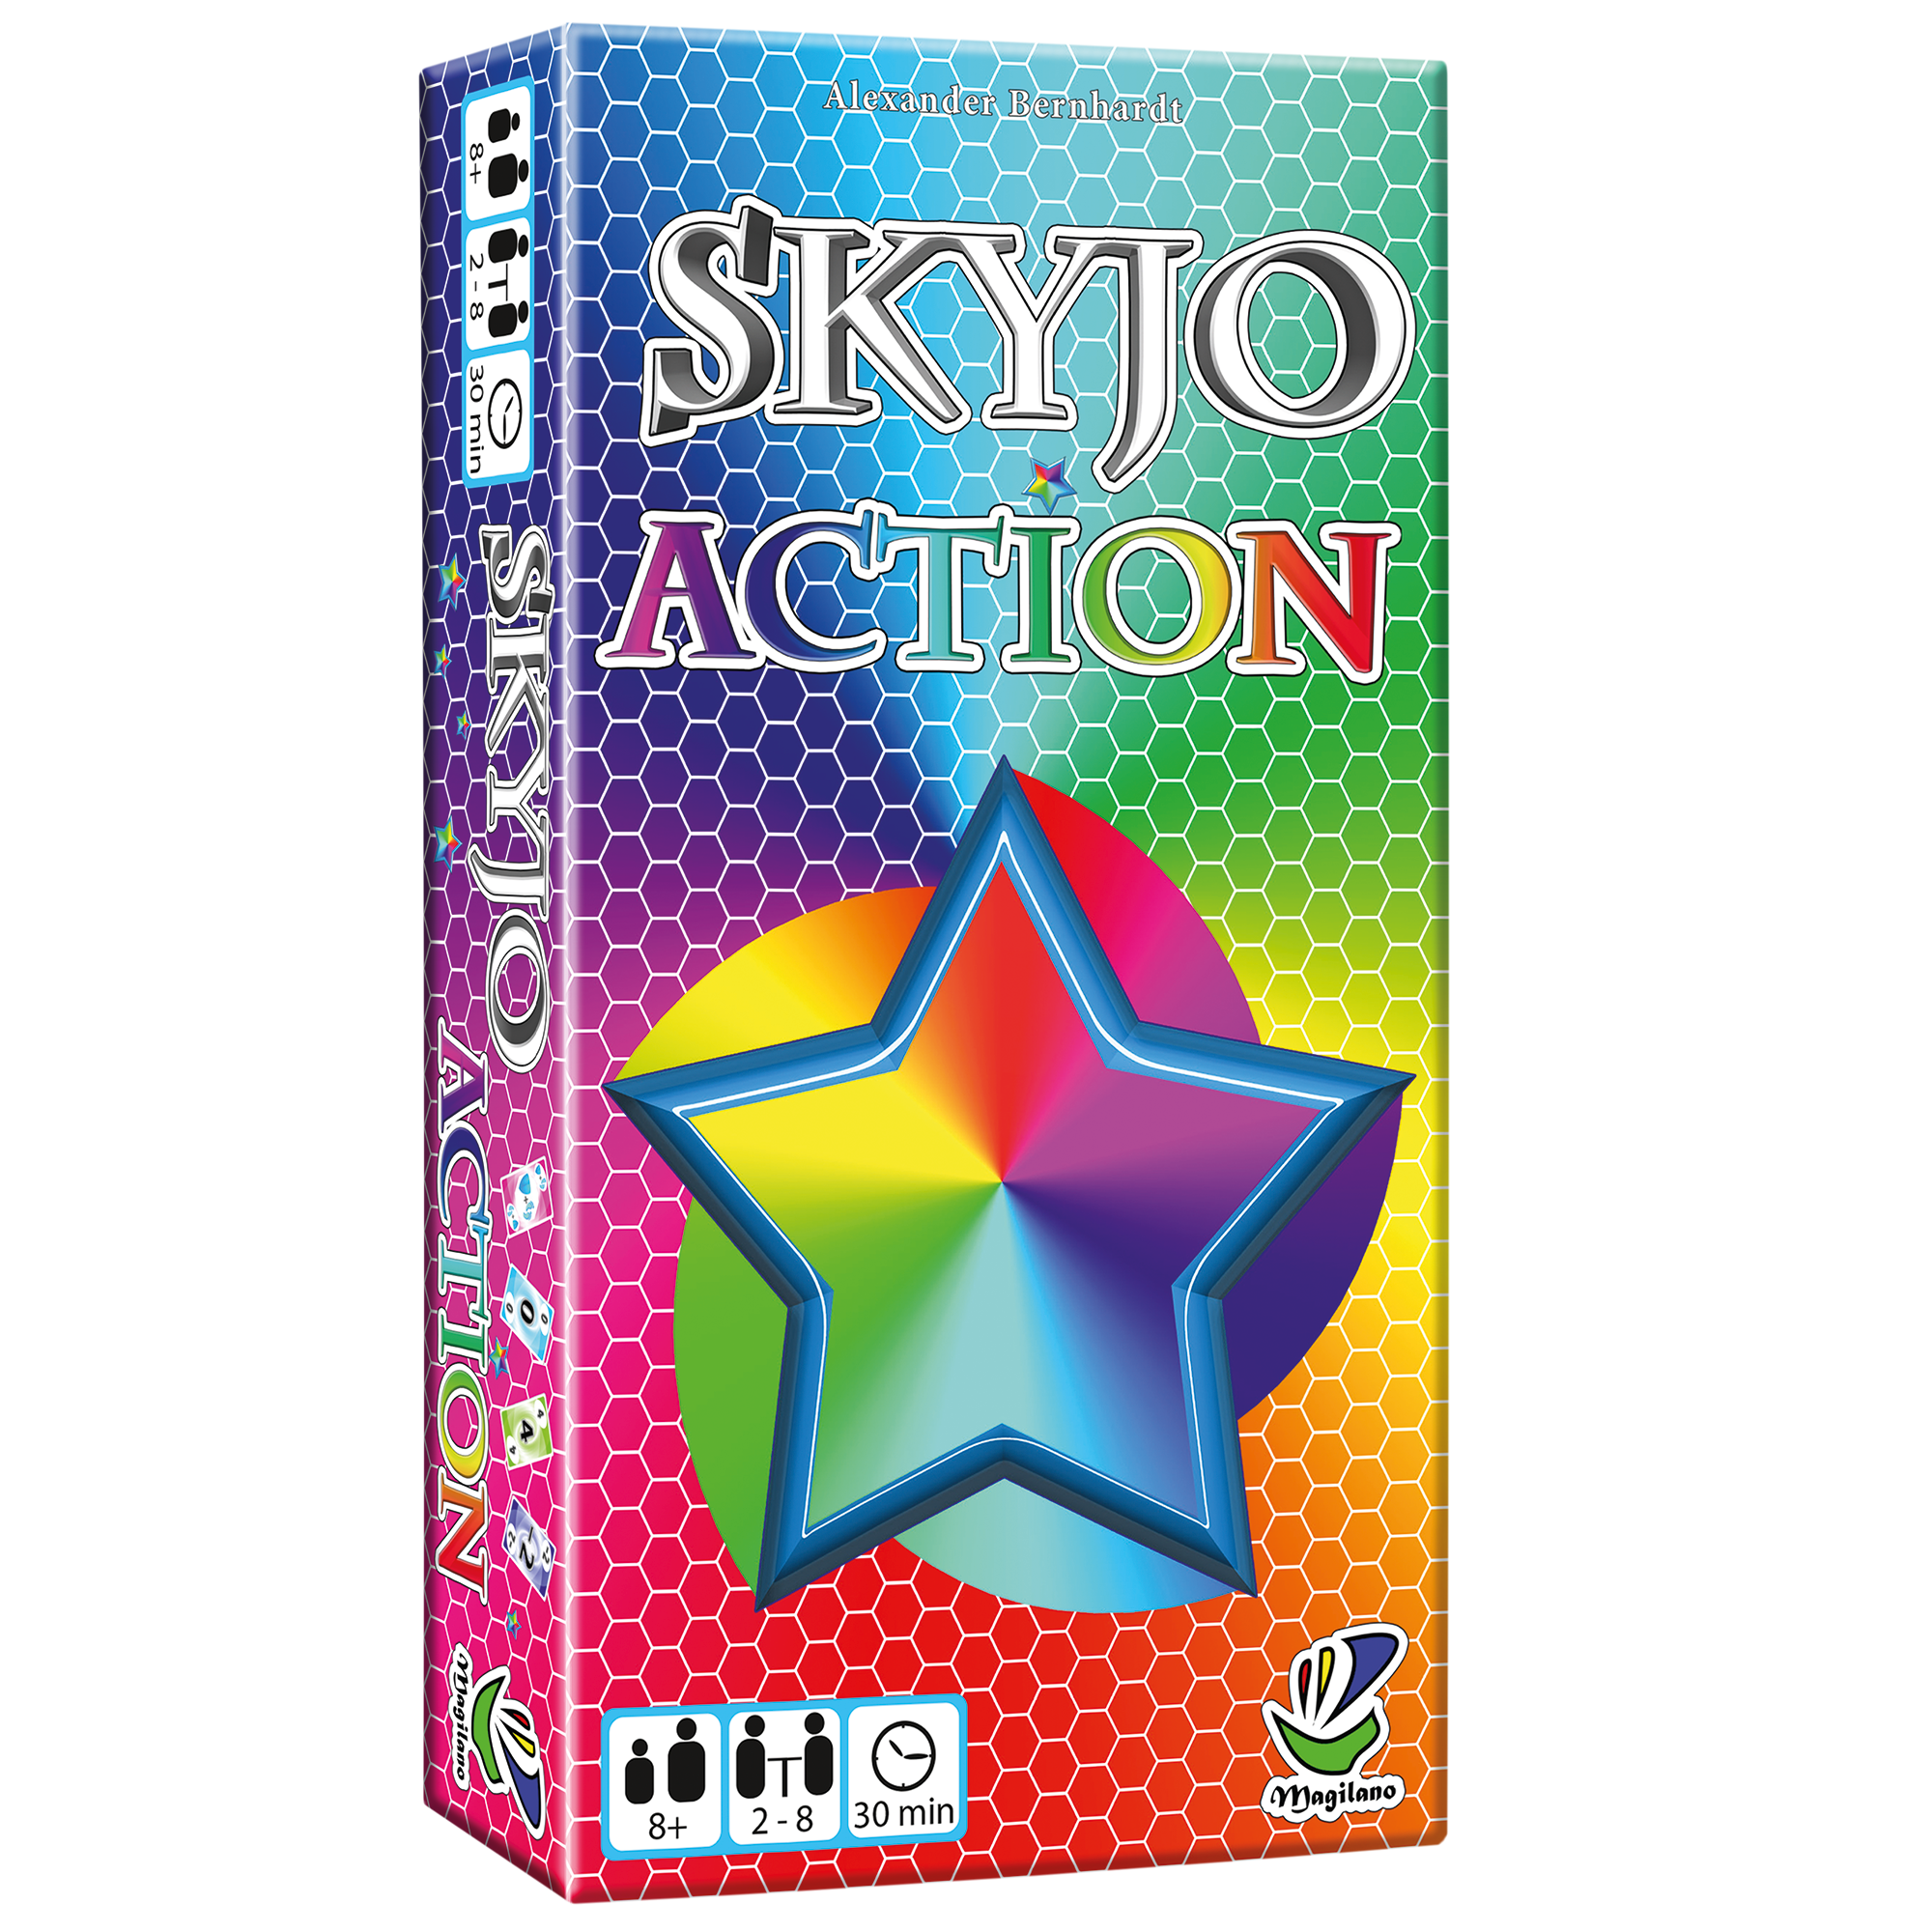 Skyjo Classique, Action ou Junior : quelle version de Skyjo choisir ? -  Playin by Magic Bazar